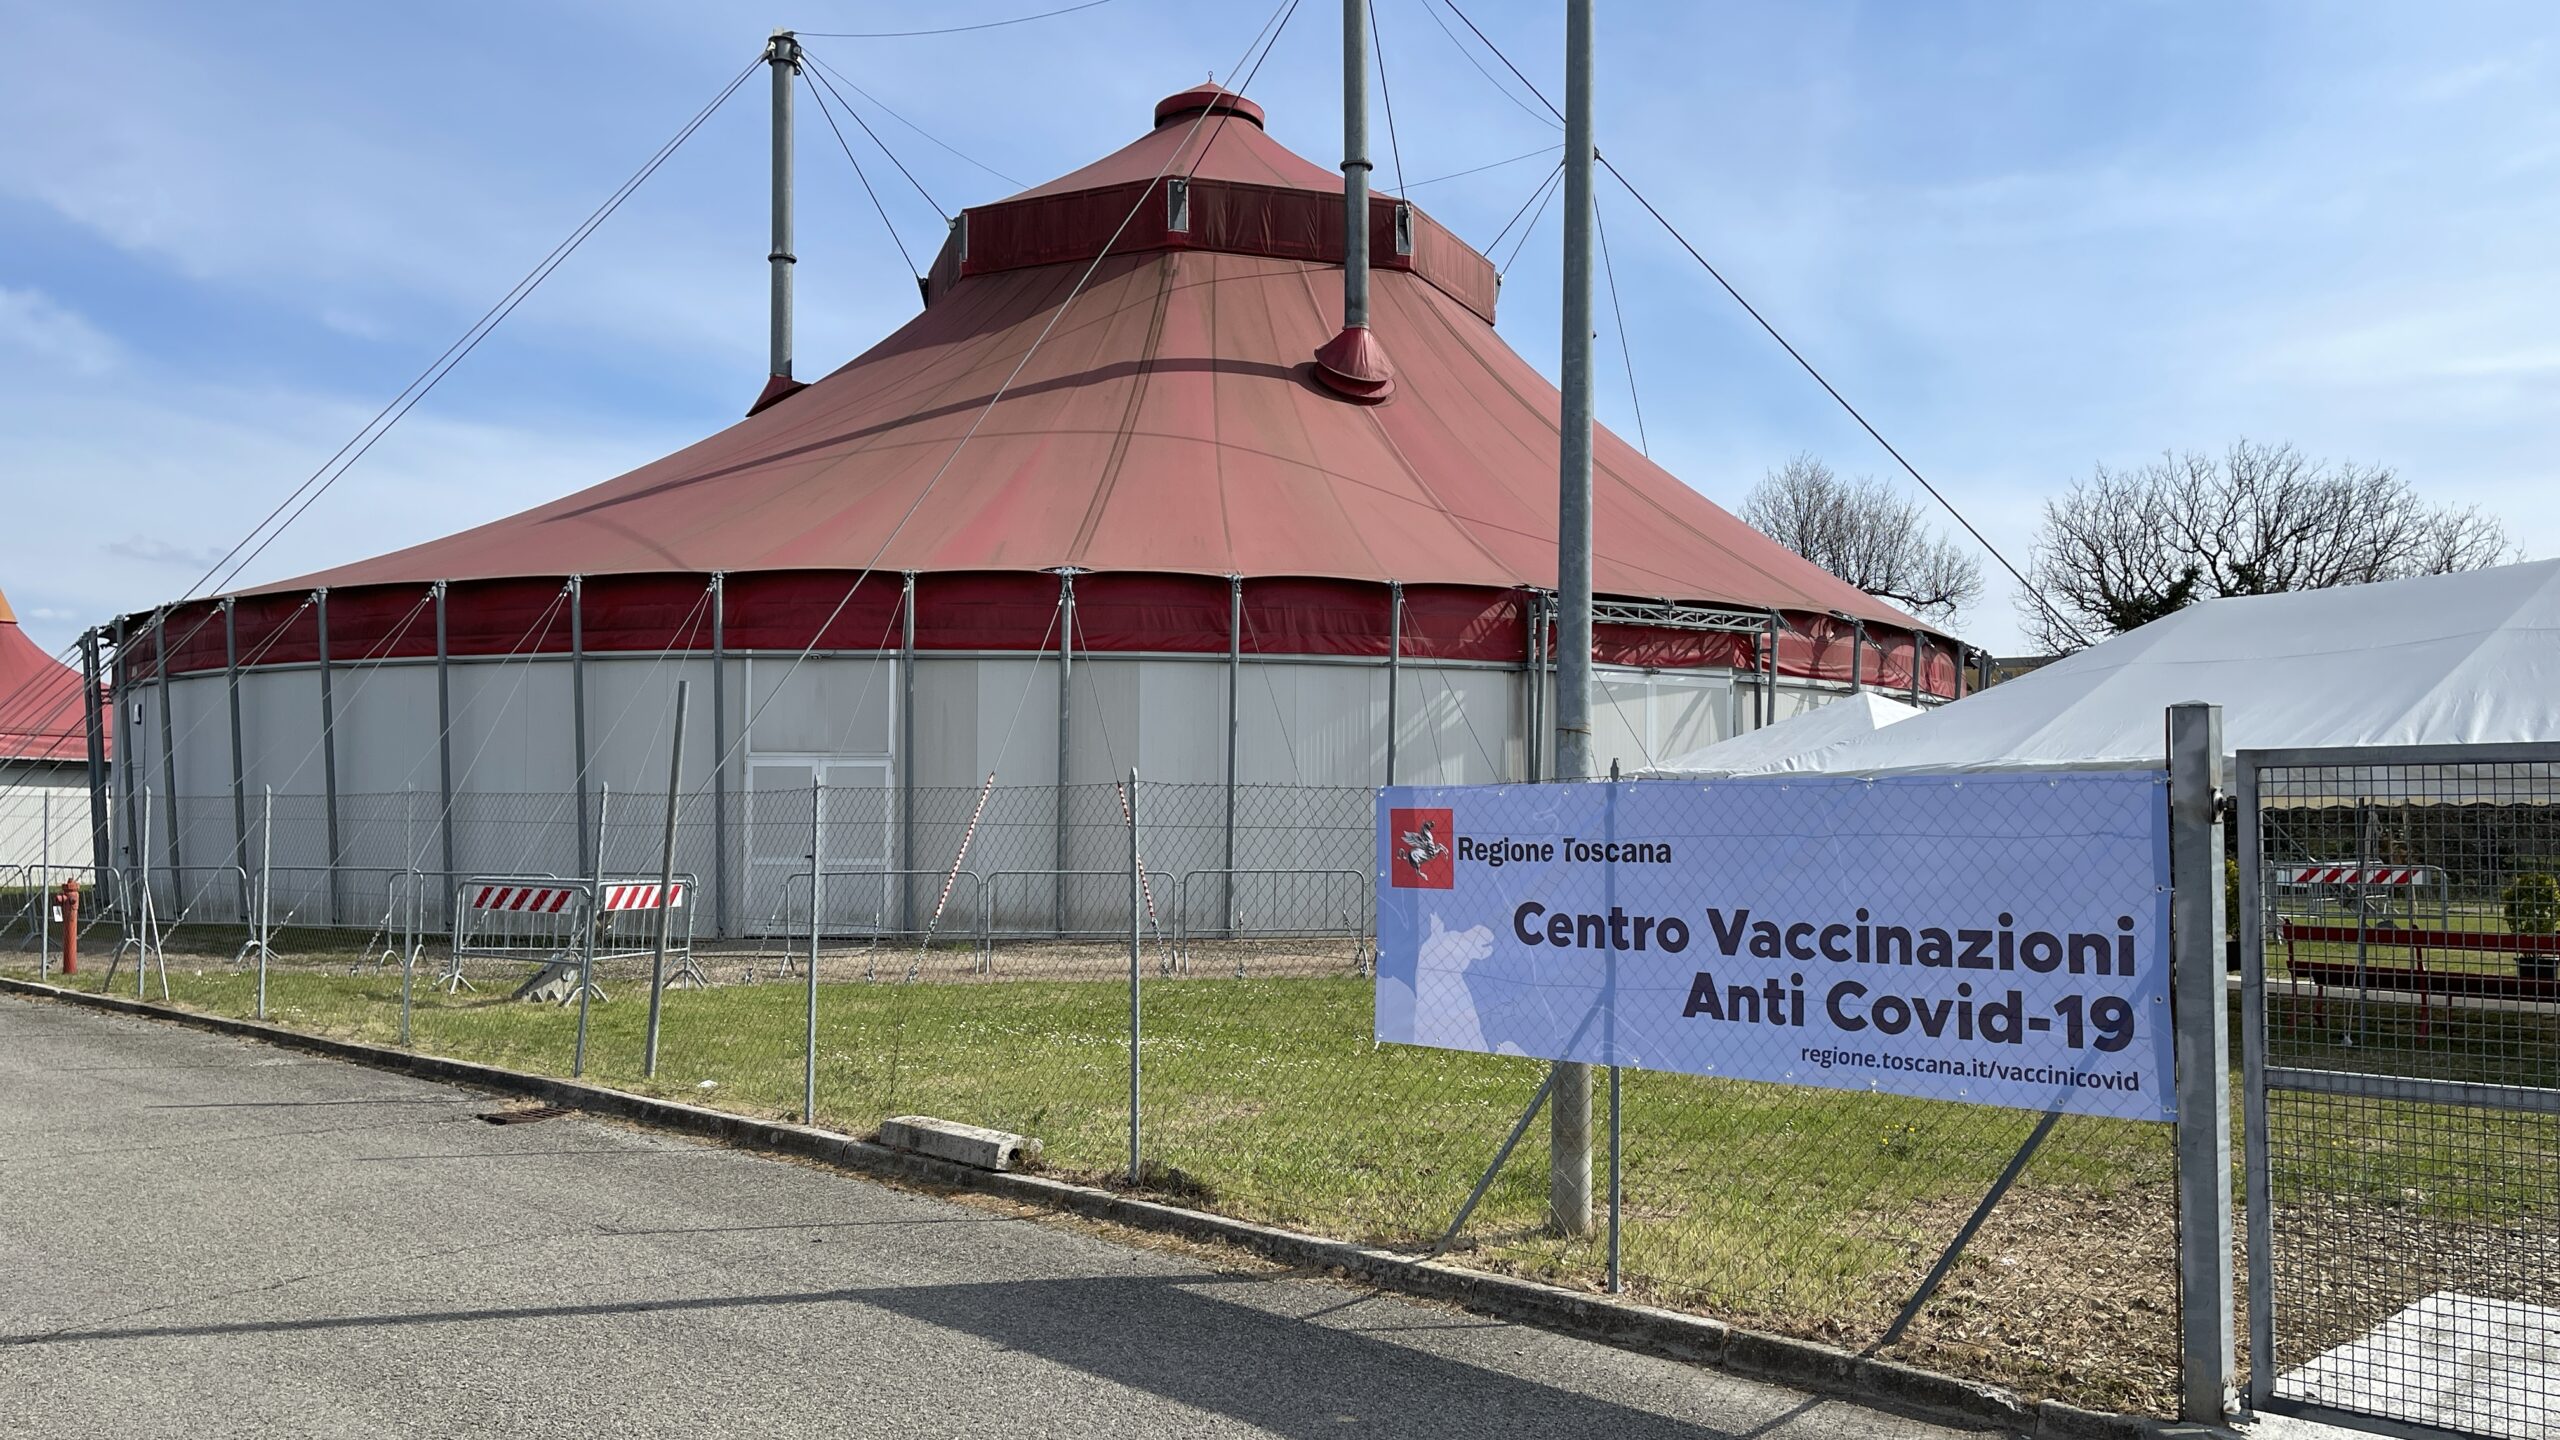 Vaccinazioni senza prenotazione per gli over 80 al Teatro Tenda di Arezzo in viale Amendola Mercoledì 21 e Giovedì 22 dalle 8 alle 20